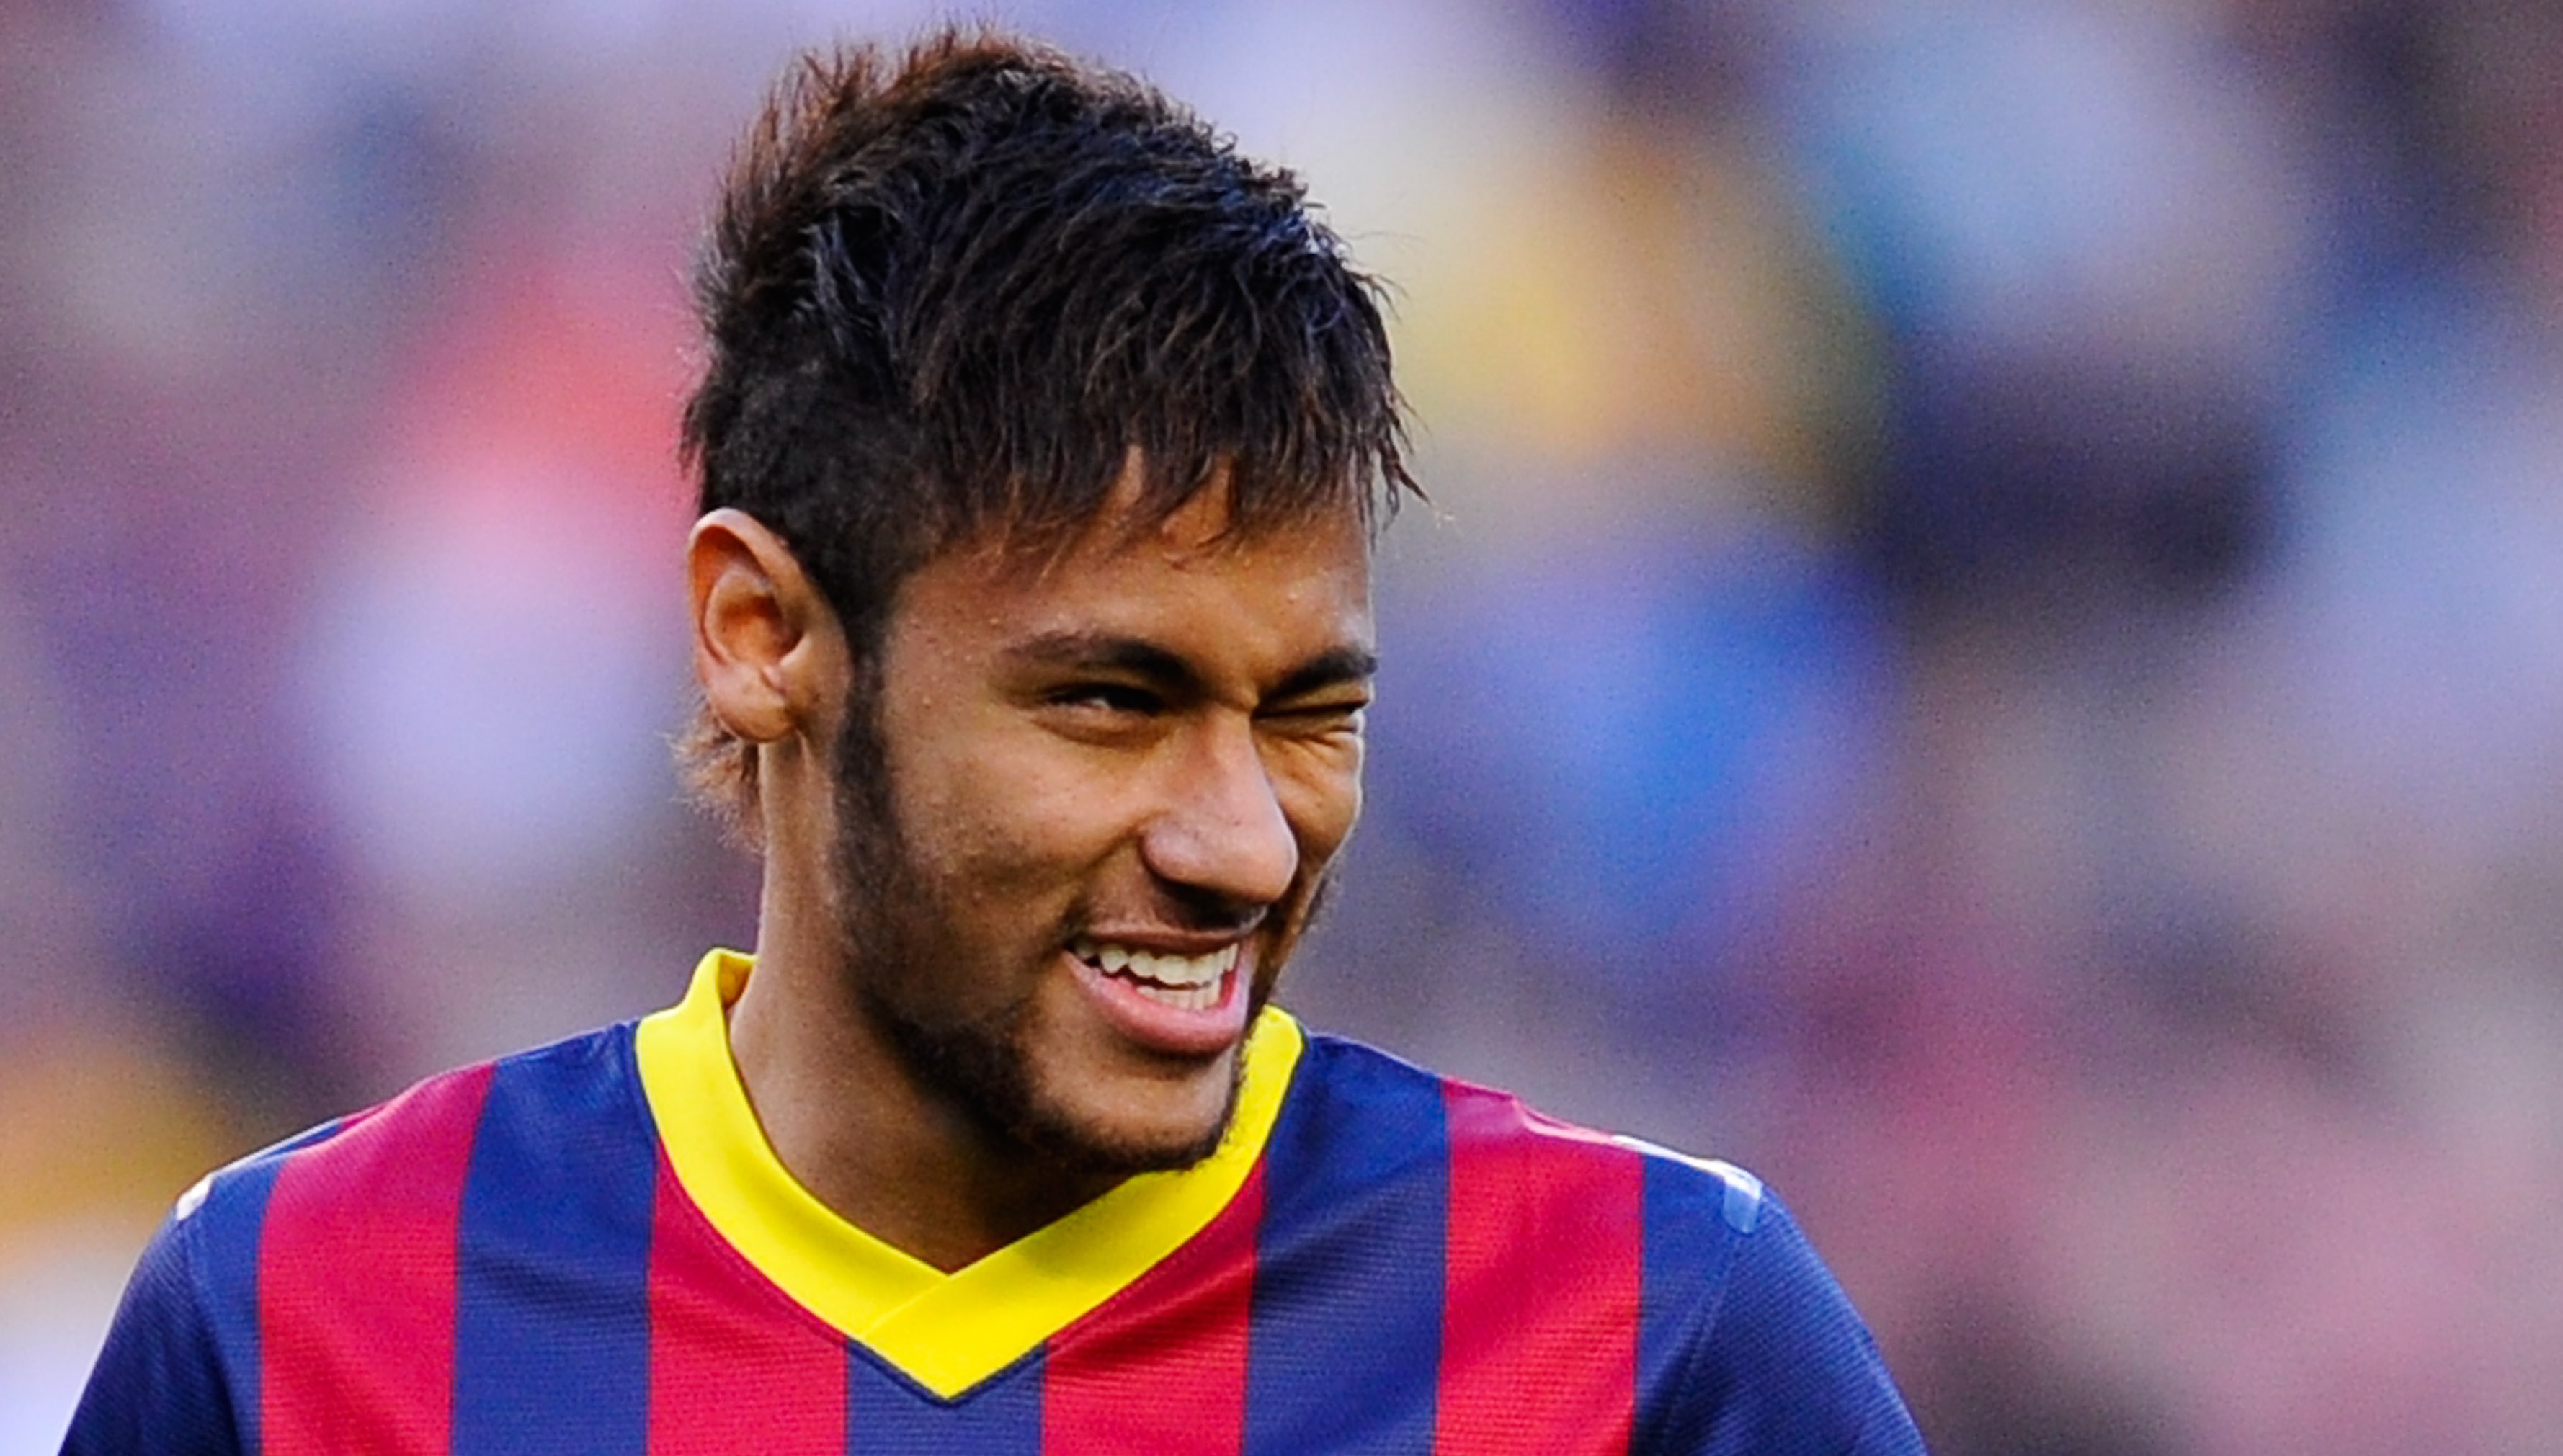 Neymar a făcut un anunț total neașteptat despre viitorul său și a declanșat nebunia: Mă voi întoarce curând!